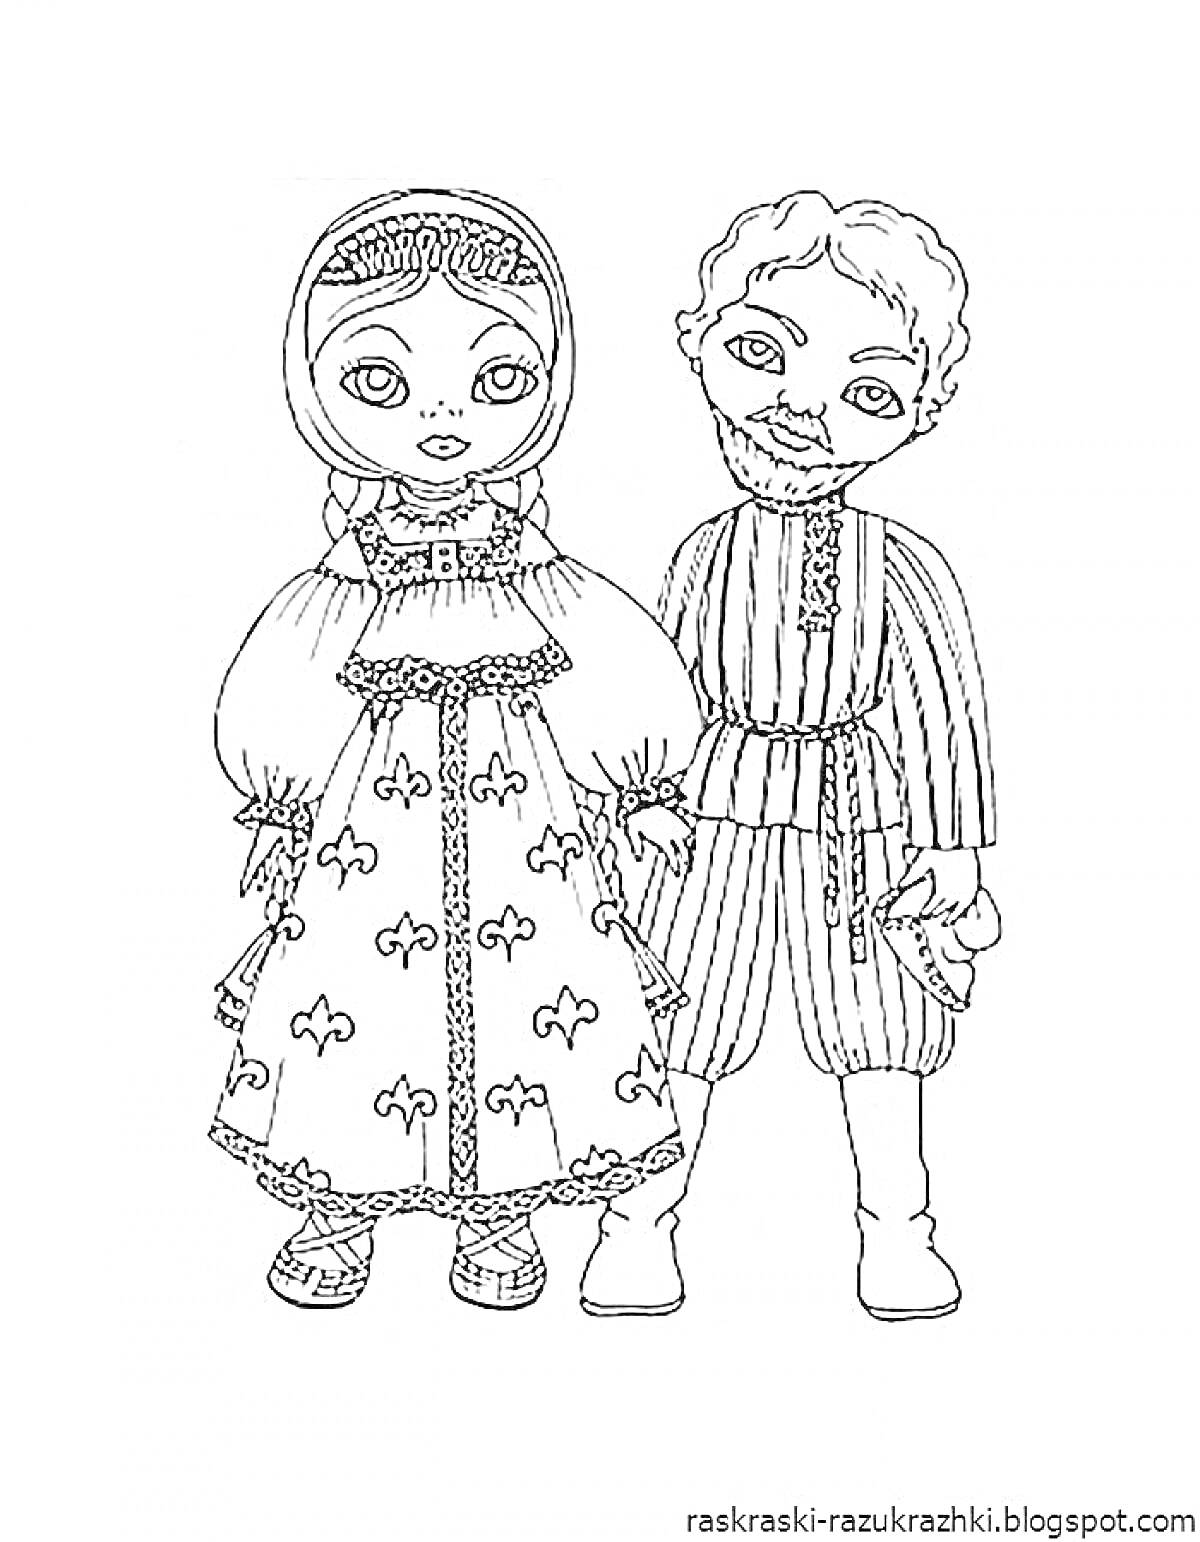 Дети в русском народном костюме - девочка в платье с узором, фартуке и головном уборе; мальчик в рубахе с поясом и полосатых штанах